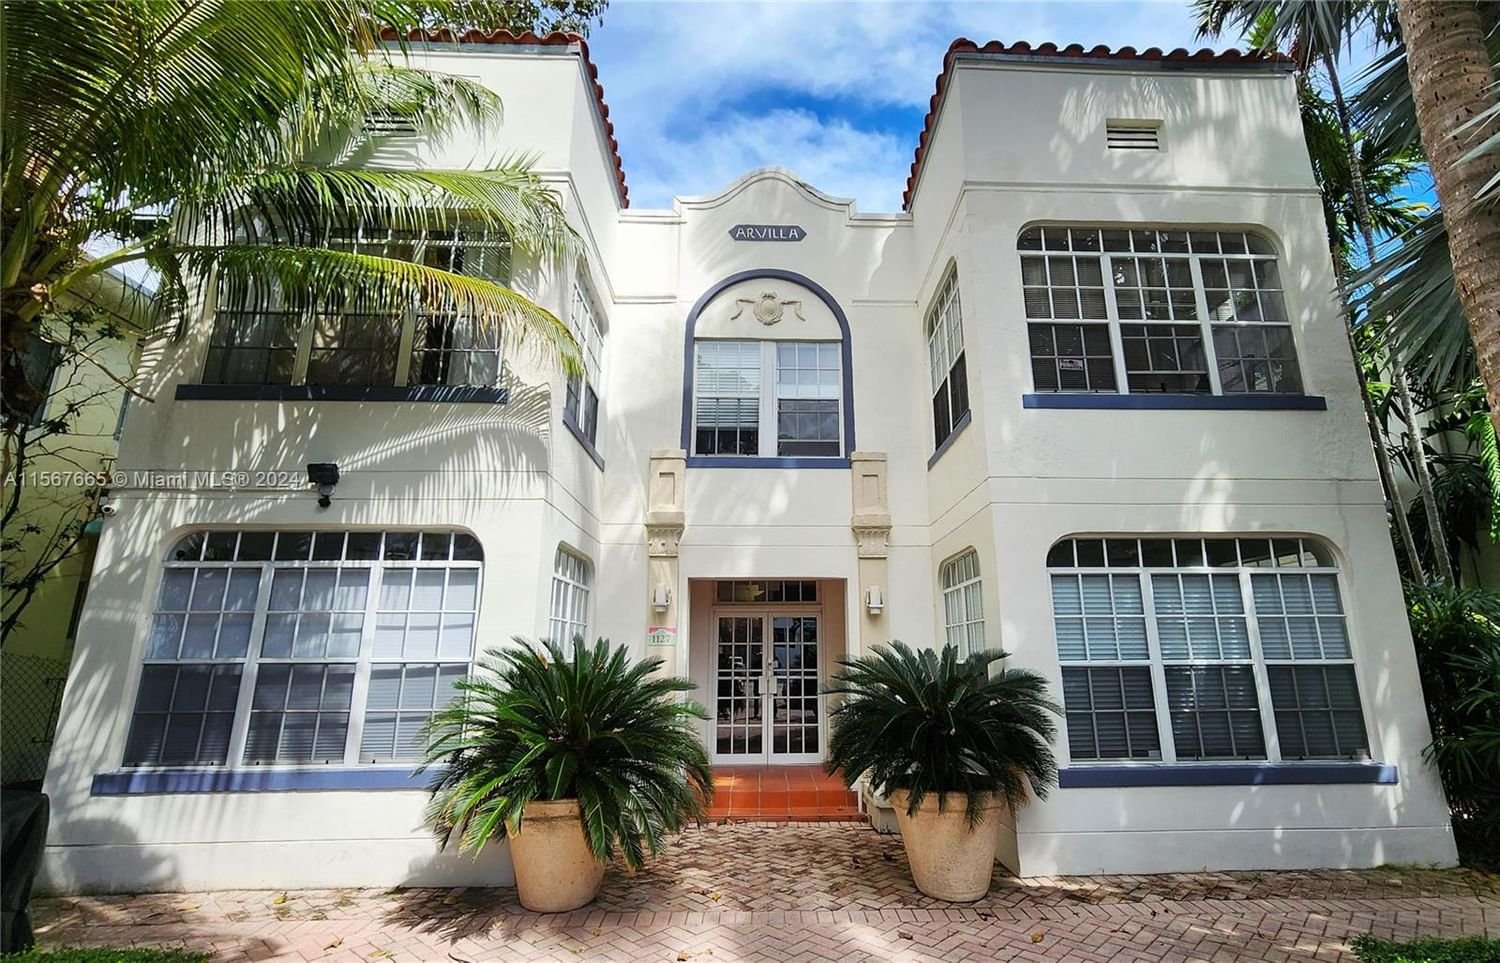 Real estate property located at 1127 Euclid Ave #105, Miami-Dade County, ARVILLA CONDO, Miami Beach, FL